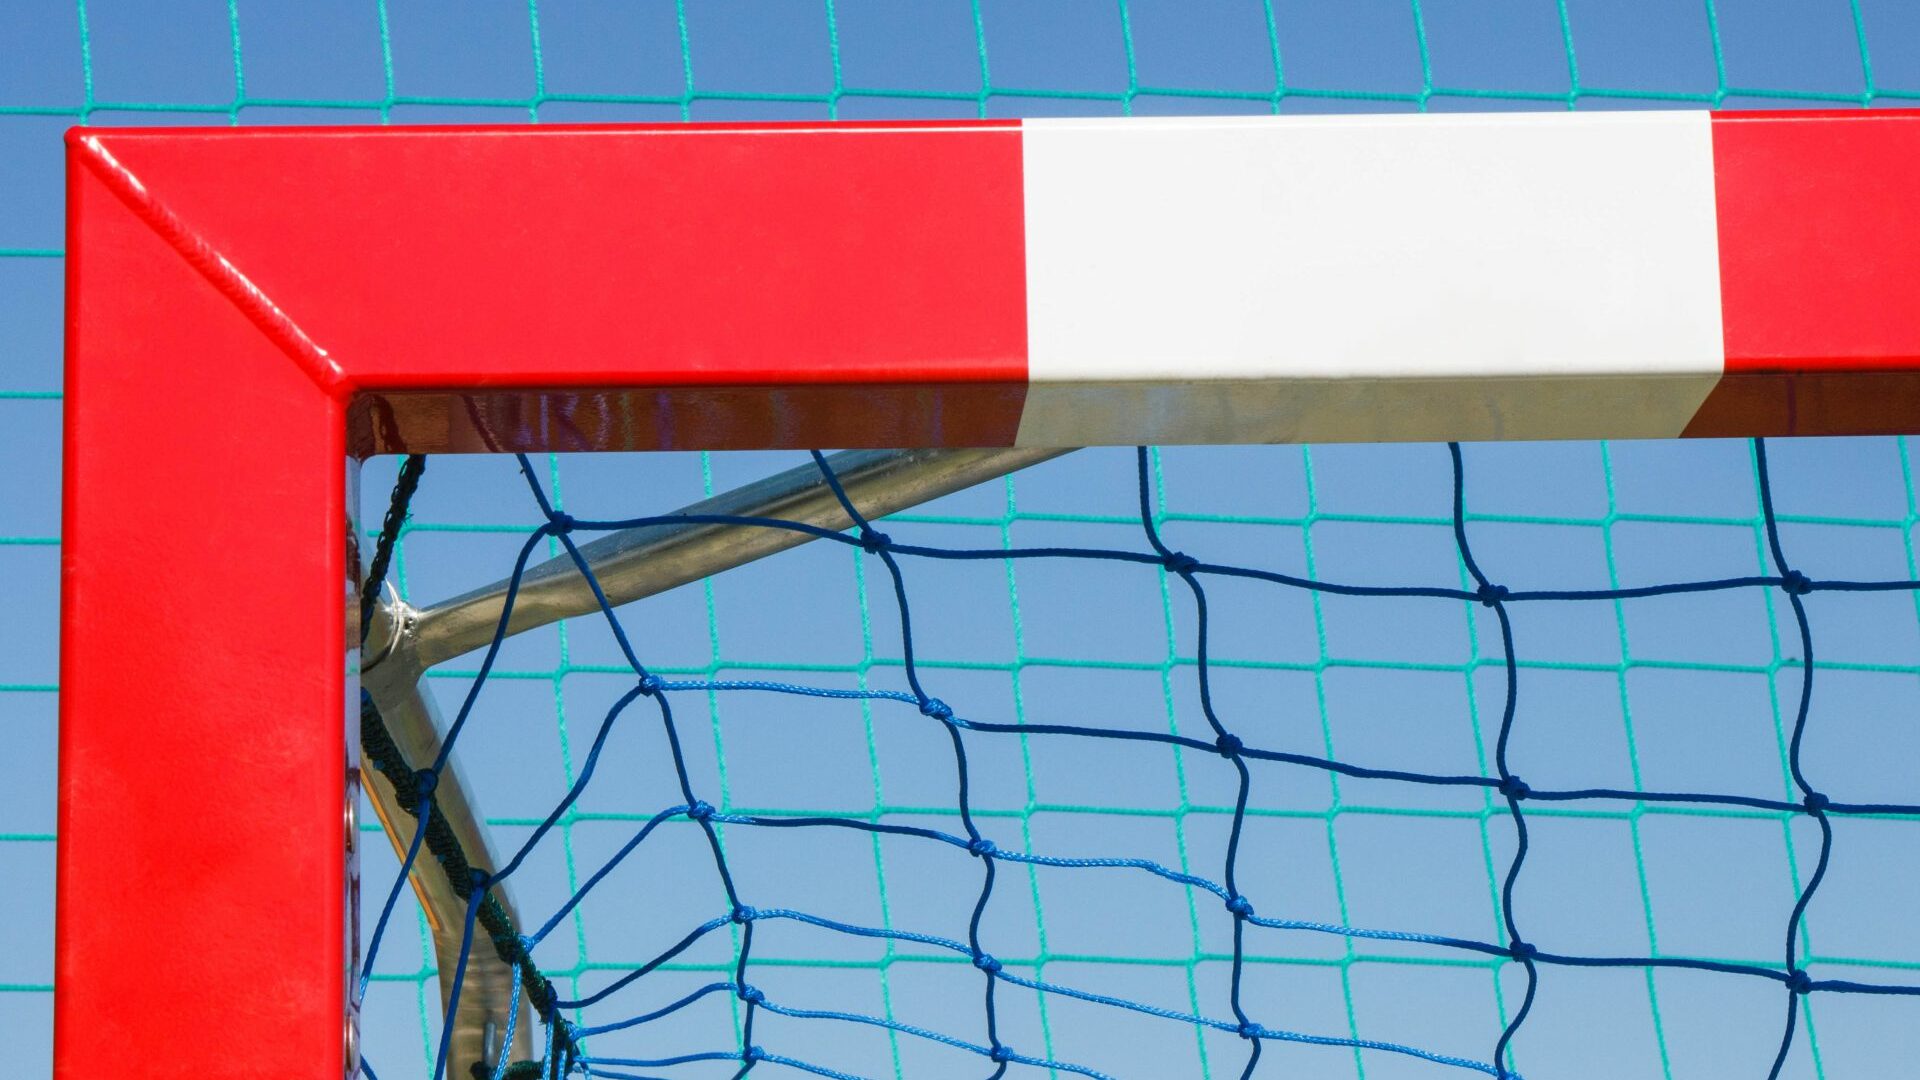 Der Klassiker - ein Handballtor in Rot und Weiß